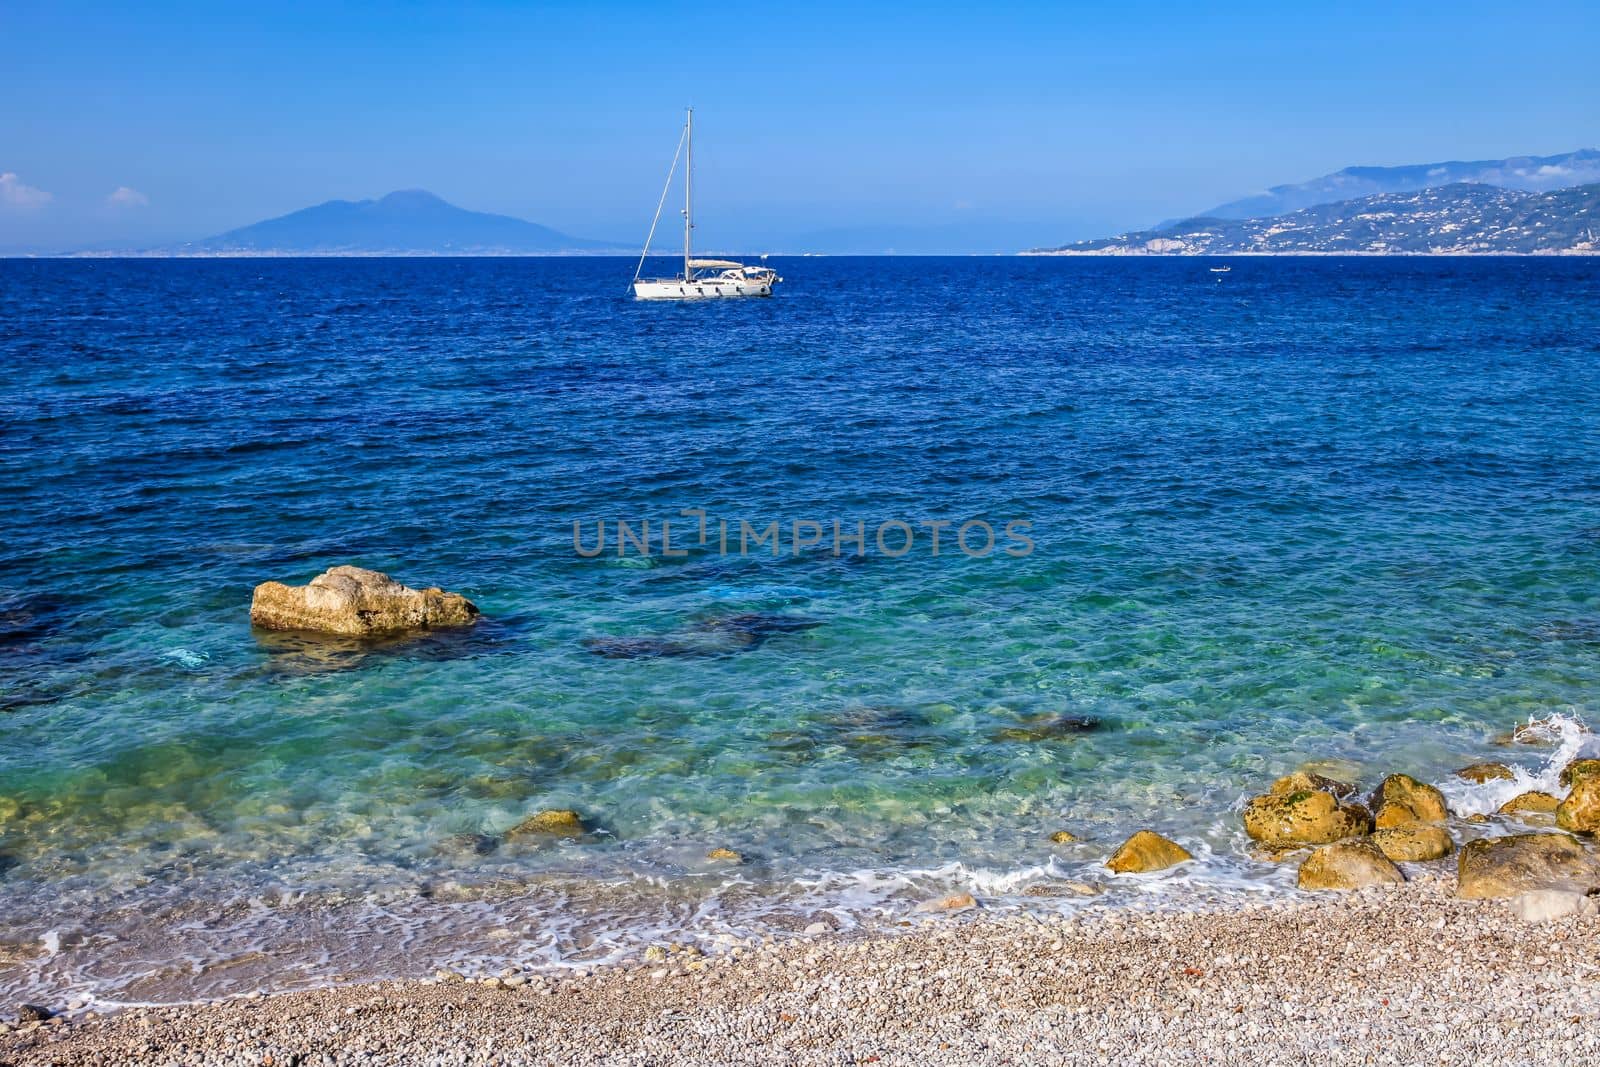 Capri beach and coastline with boats and sailboats, amalfi coast, Italy by positivetravelart